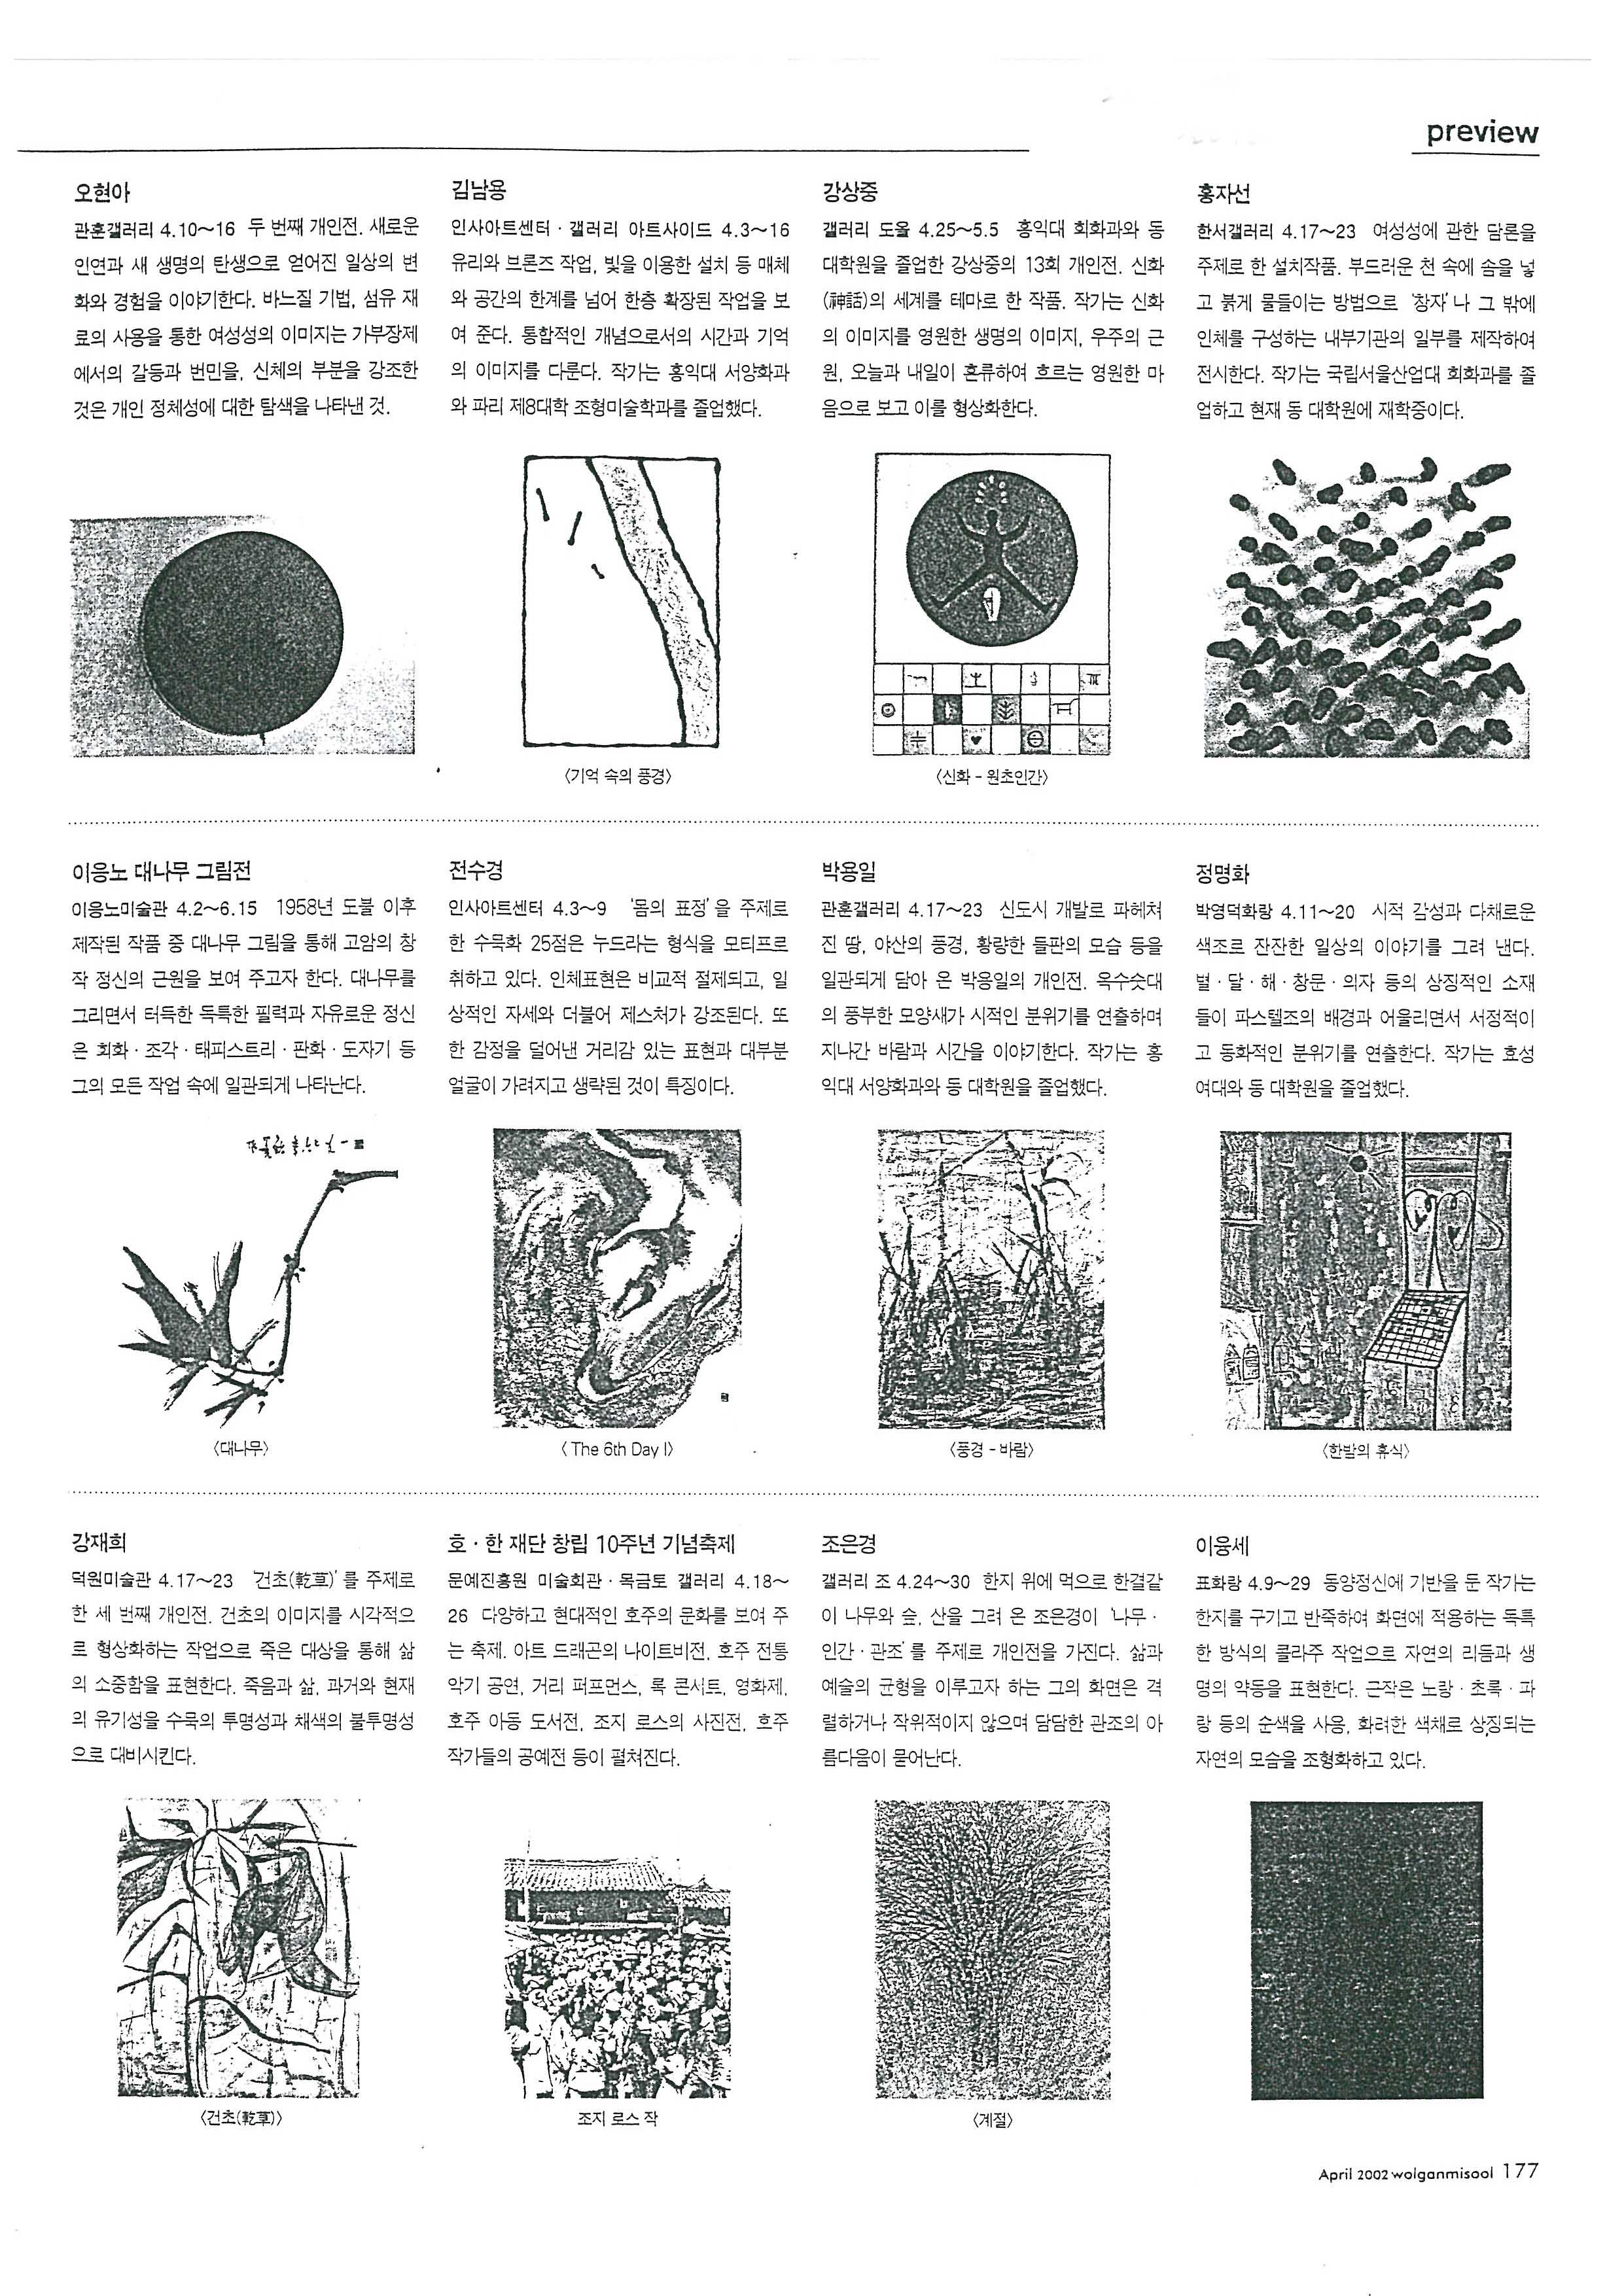  「이응노 대나무 그림전」, 『월간미술』 